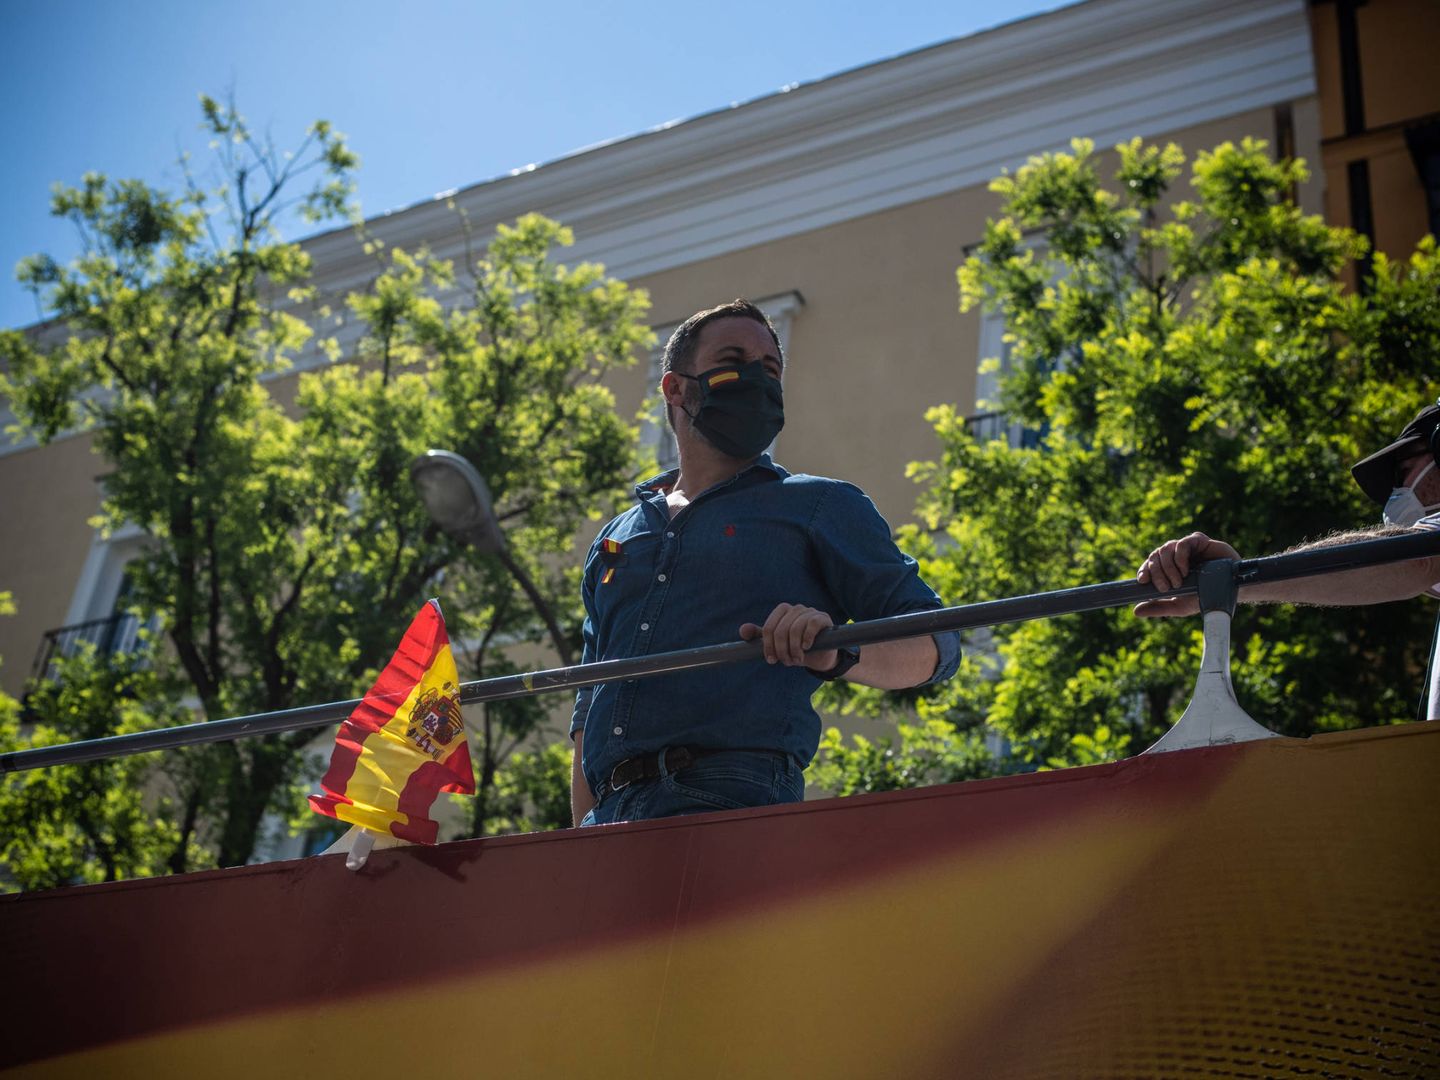 Santiago Abascal saluda a los manifestantes desde el autobús fletado por Vox. (Foto: C.C.)